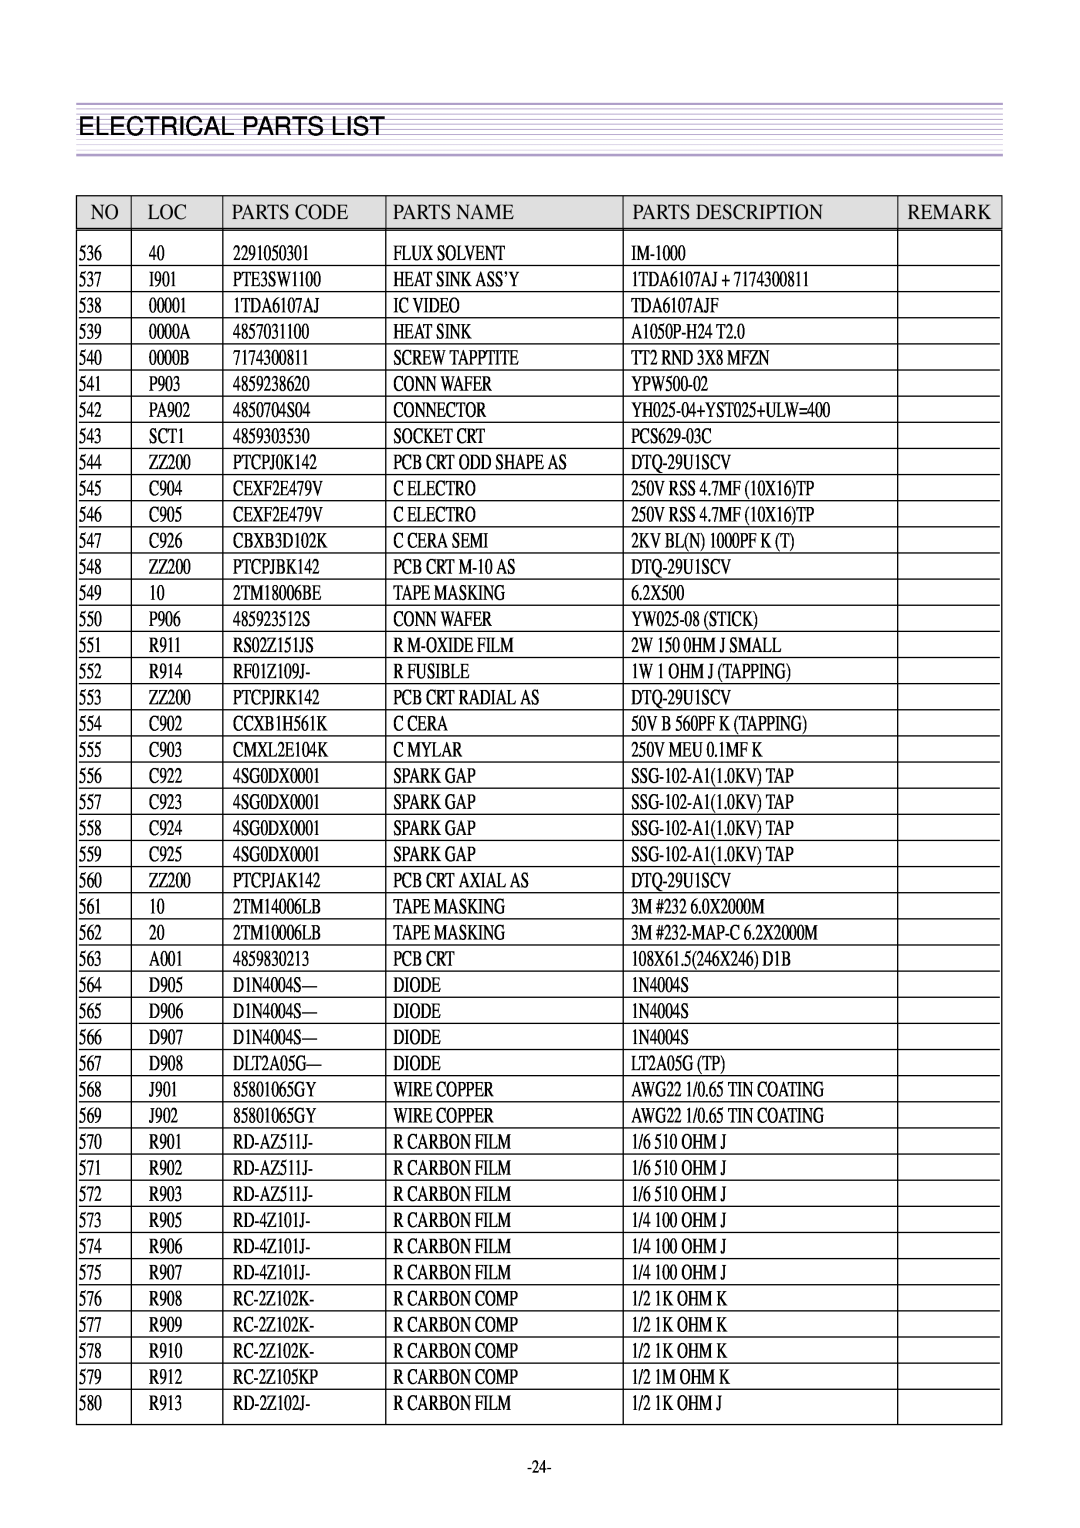 Daewoo DTQ-29U5SSFV, DTQ-29U4SCV, CN-401FN, CN-400FN DTQ-29U1SCV DTQ-29U1SSFV DTQ-29U1SCSV Electrical Parts List 